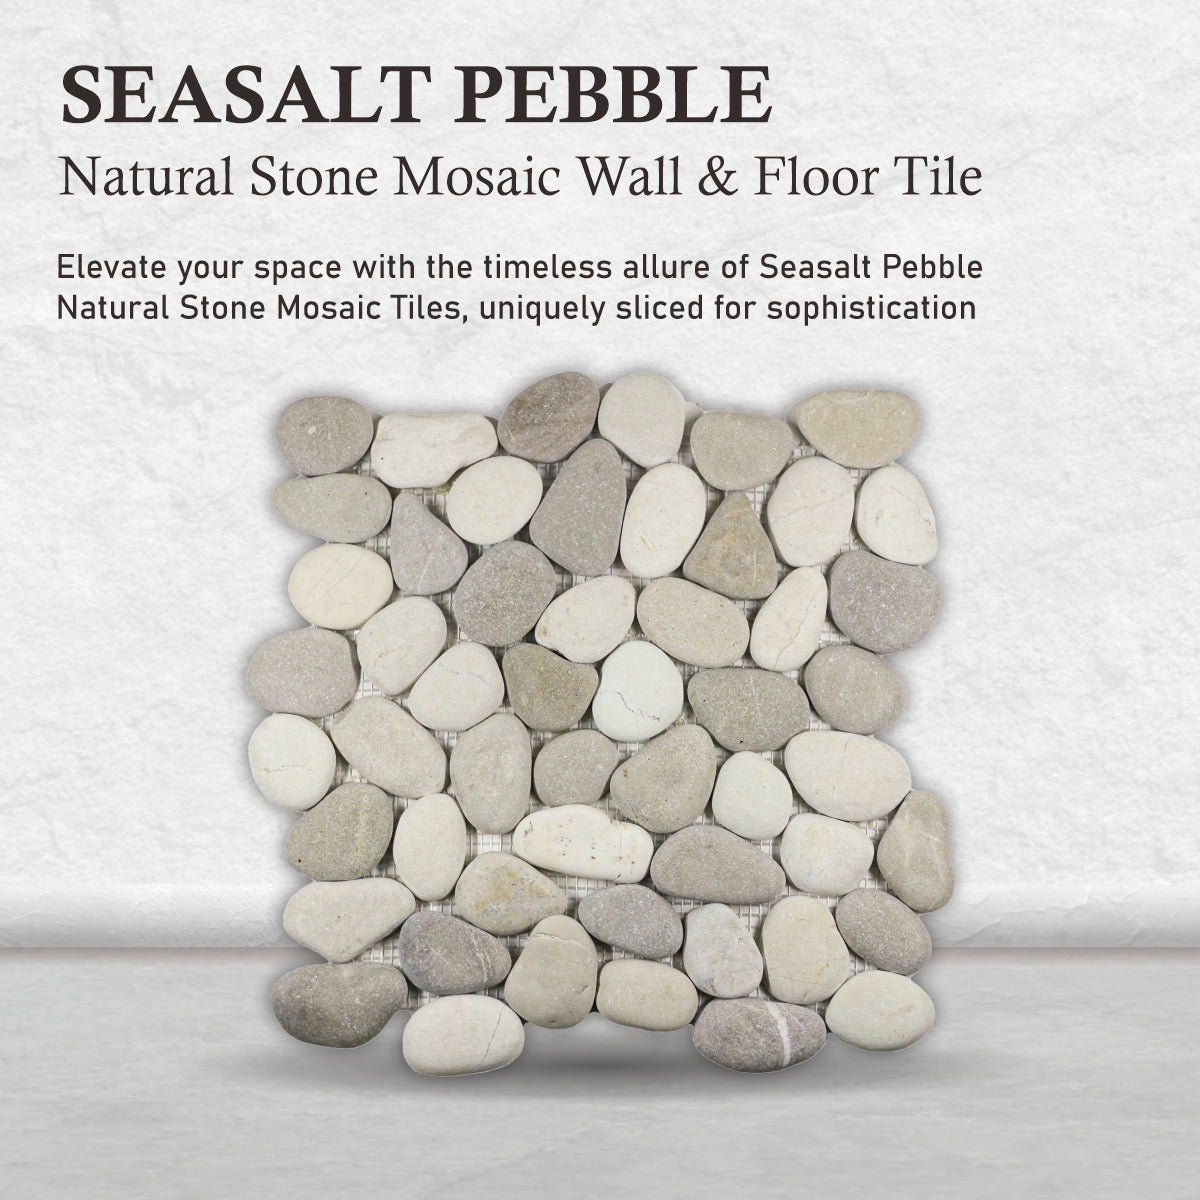 Pebble Mosaic Tile for Wall, Seasalt Pebble Stone Mosaic Tiles